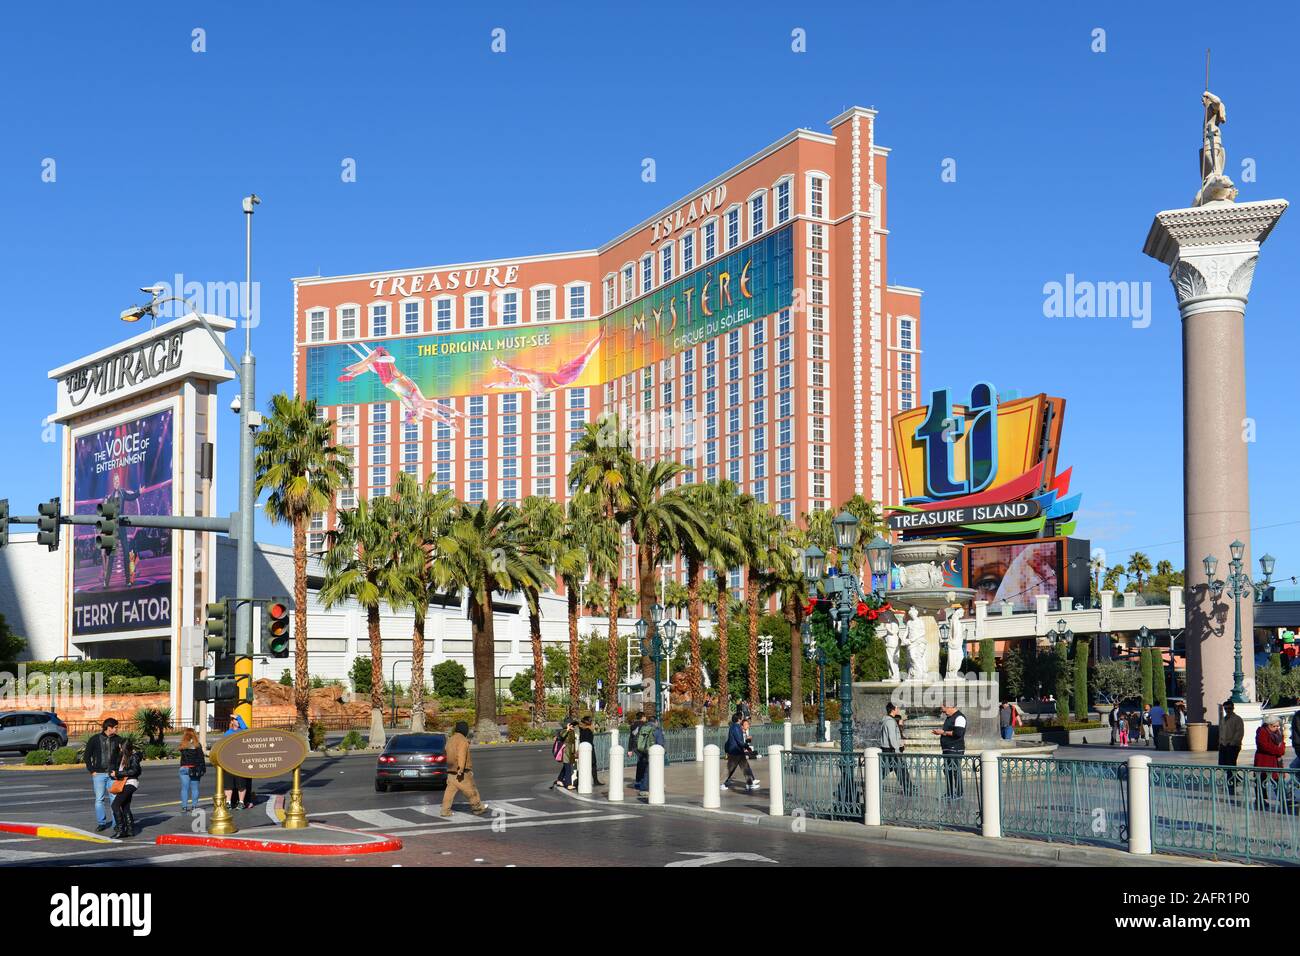 Treasure Island es un complejo turístico de lujo y casino en las Vegas  Strip en las Vegas, Nevada, Estados Unidos. El hotel tiene el tema de los  Piratas del Caribe Fotografía de